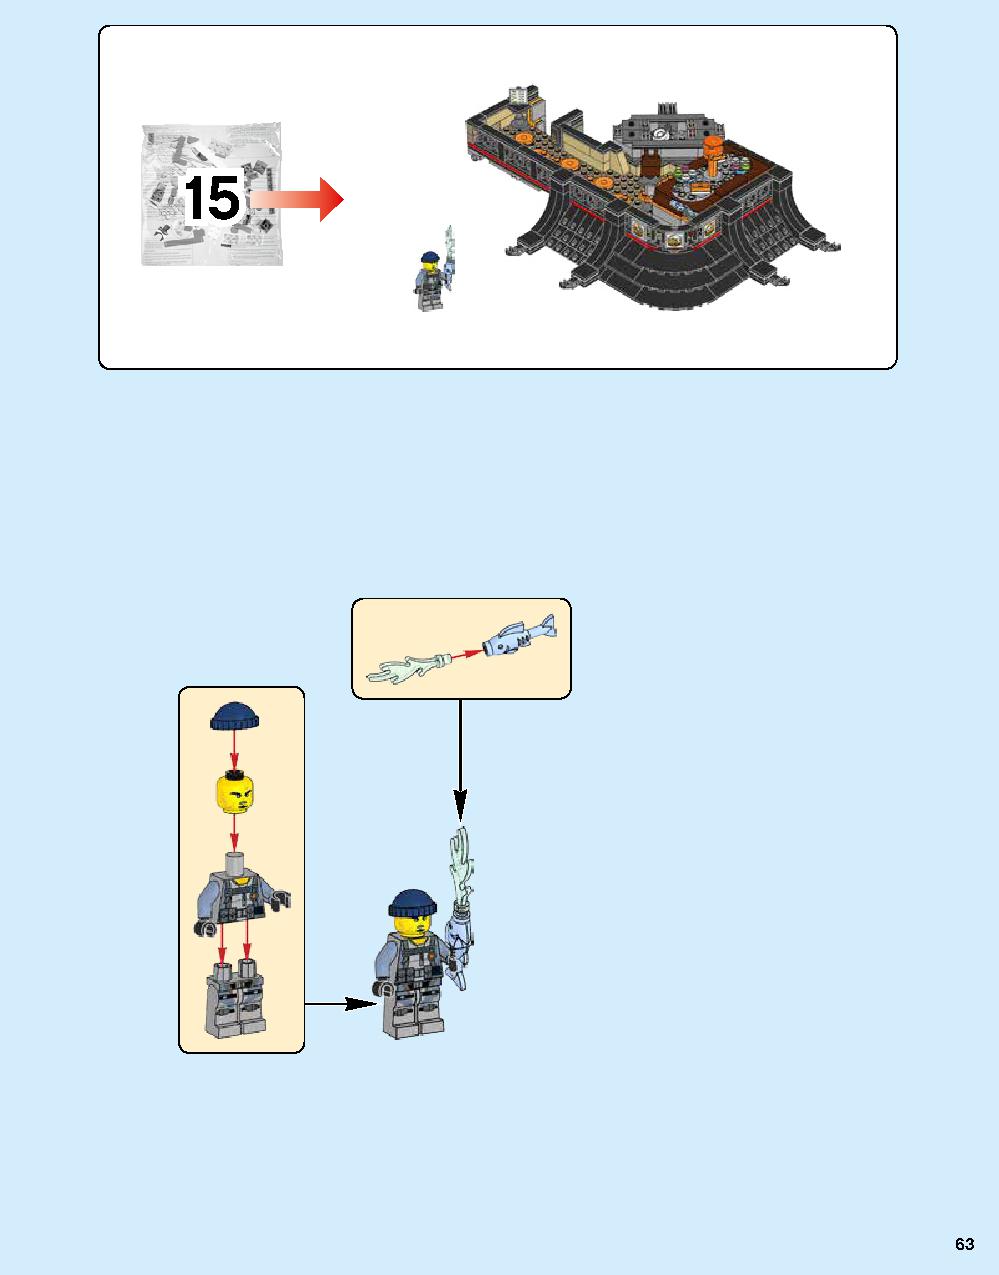 ニンジャゴー シティ 70620 レゴの商品情報 レゴの説明書・組立方法 63 page